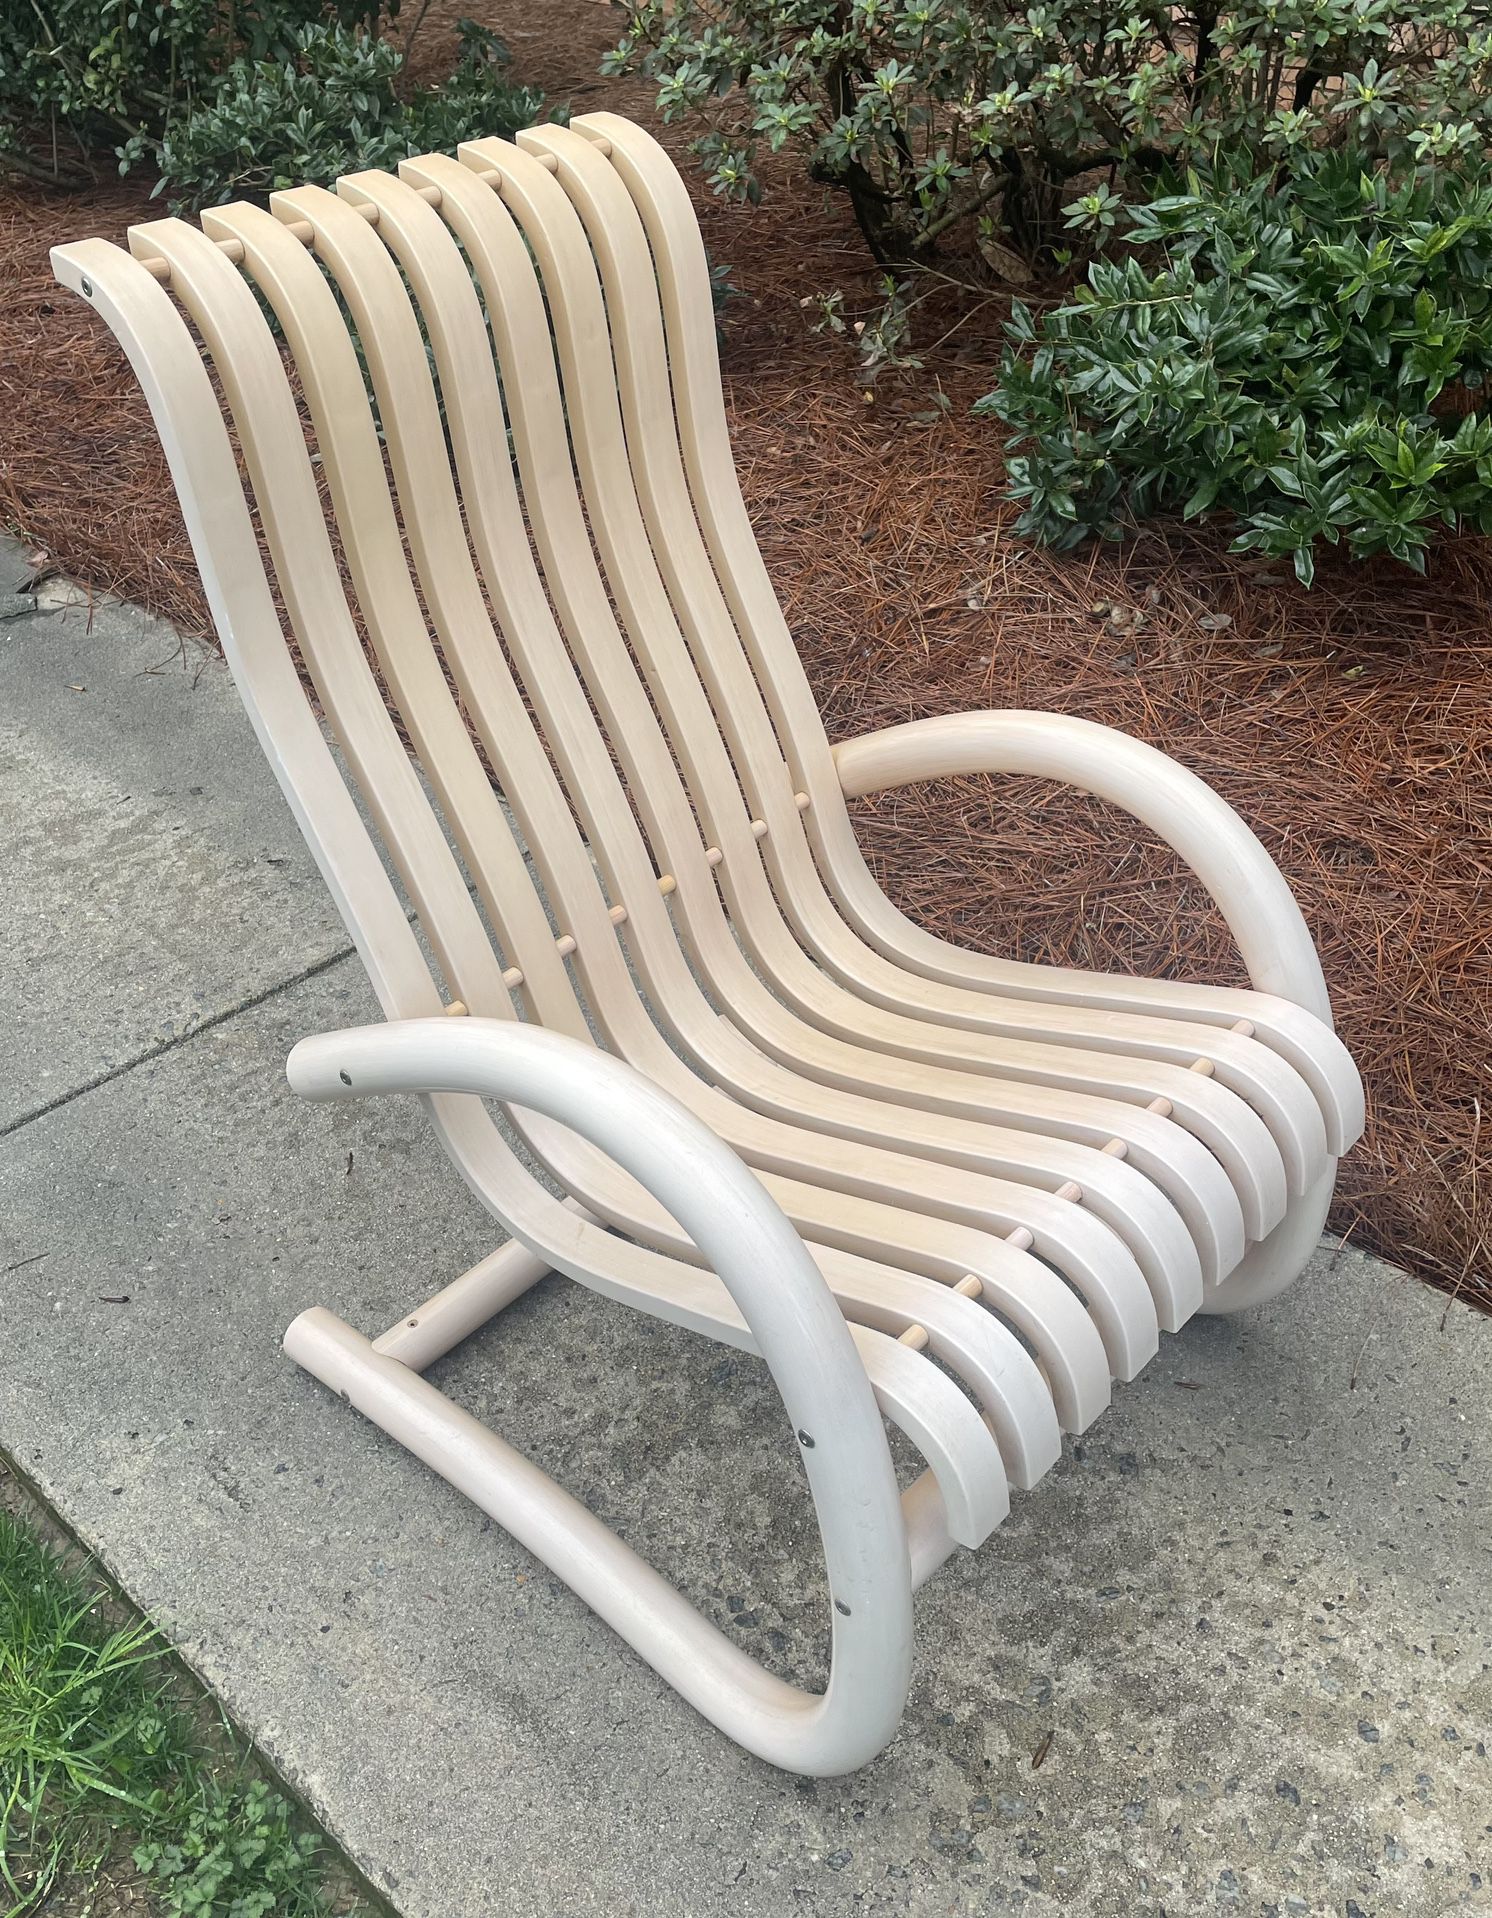 Modern Bent Wood Chair